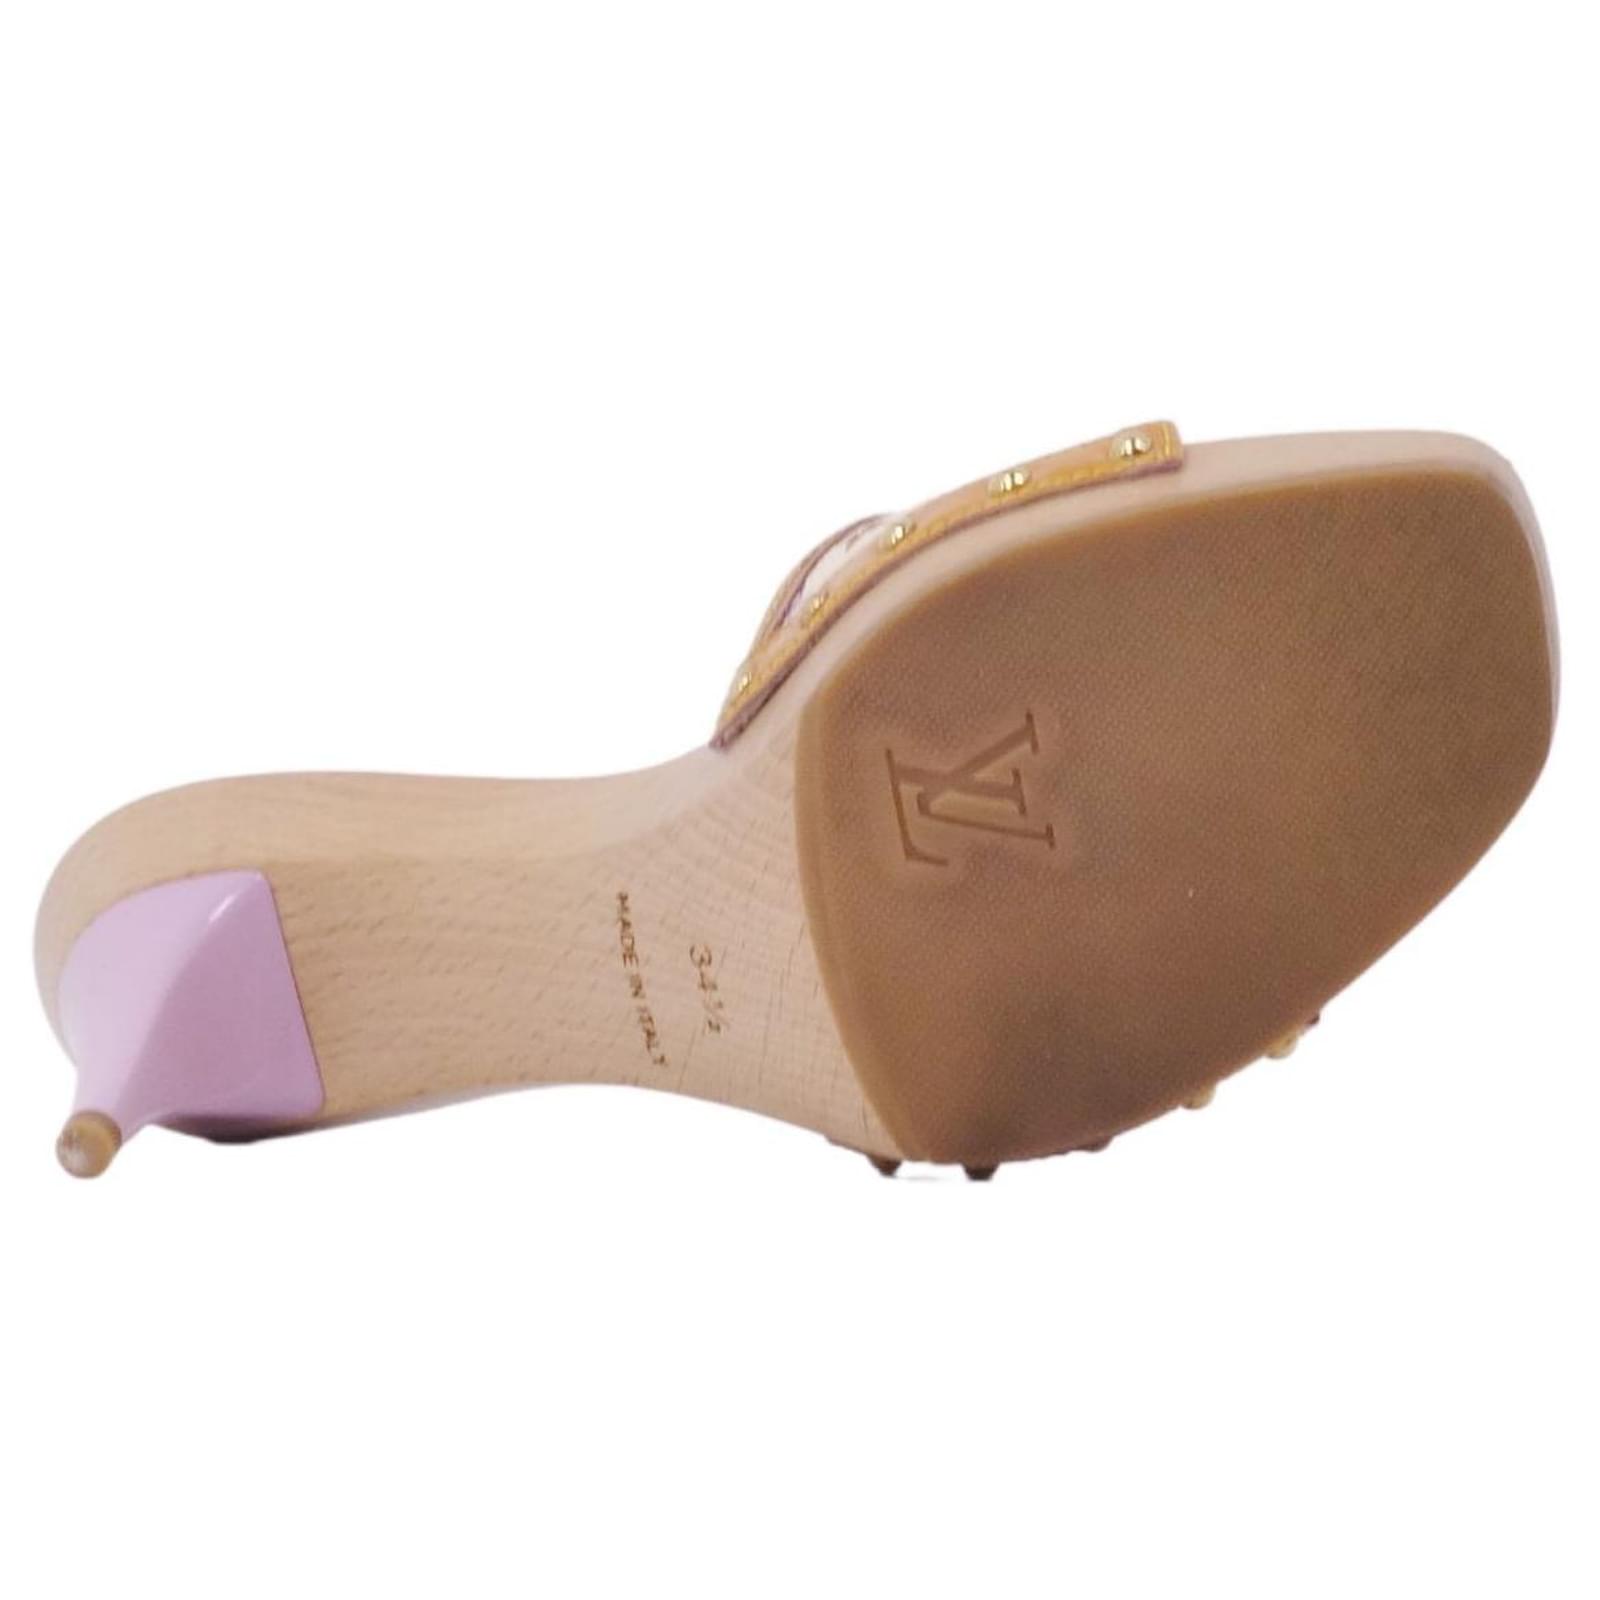 Sandale a talon Louis Vuitton - Vinted